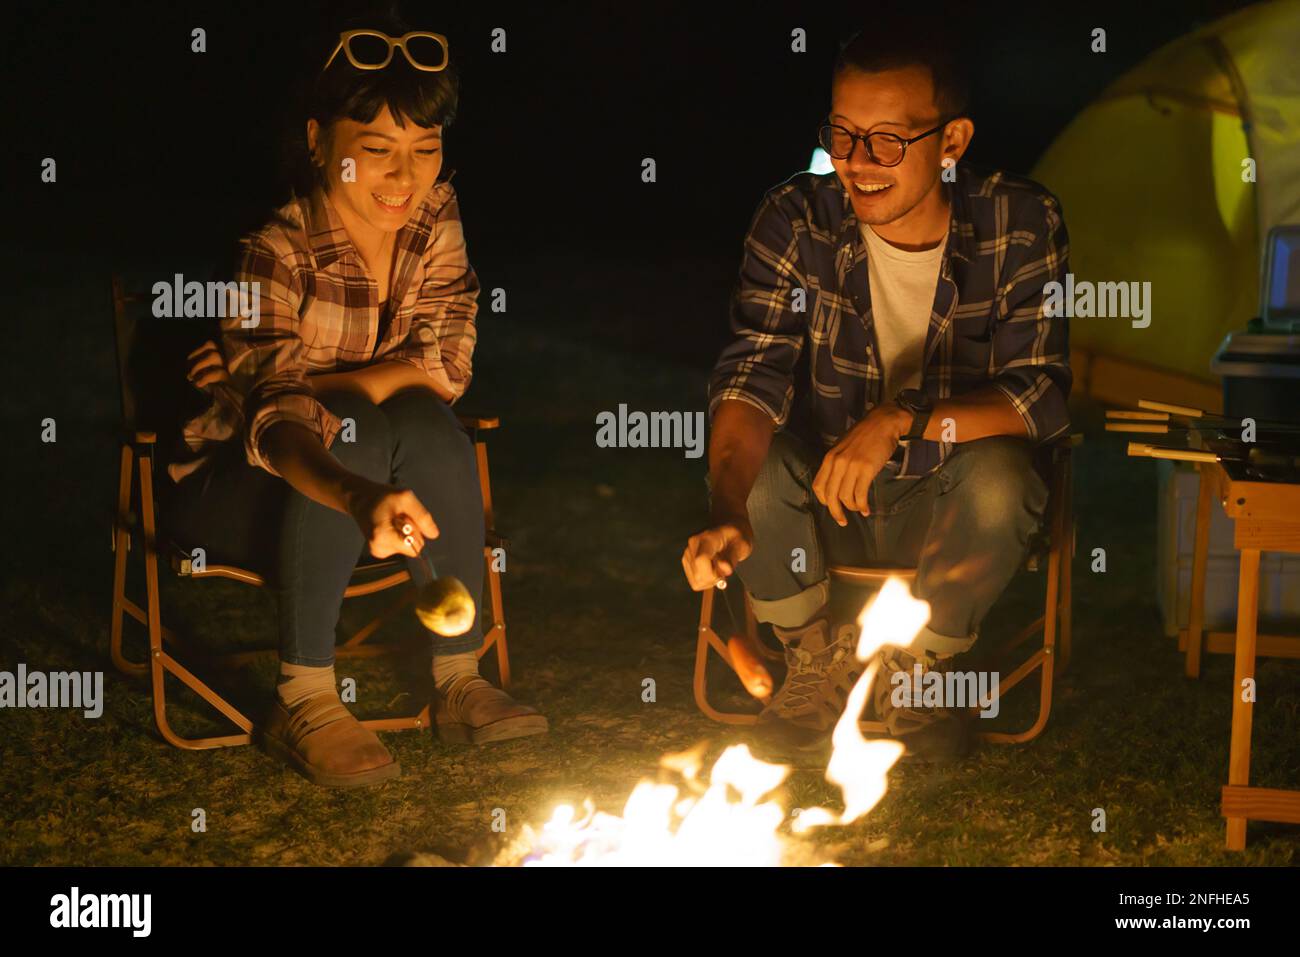 La coppia asiatica sta grigliando il mais e le salsicce in un falò dove hanno allestito una tenda per accamparsi al lago di notte. Foto Stock